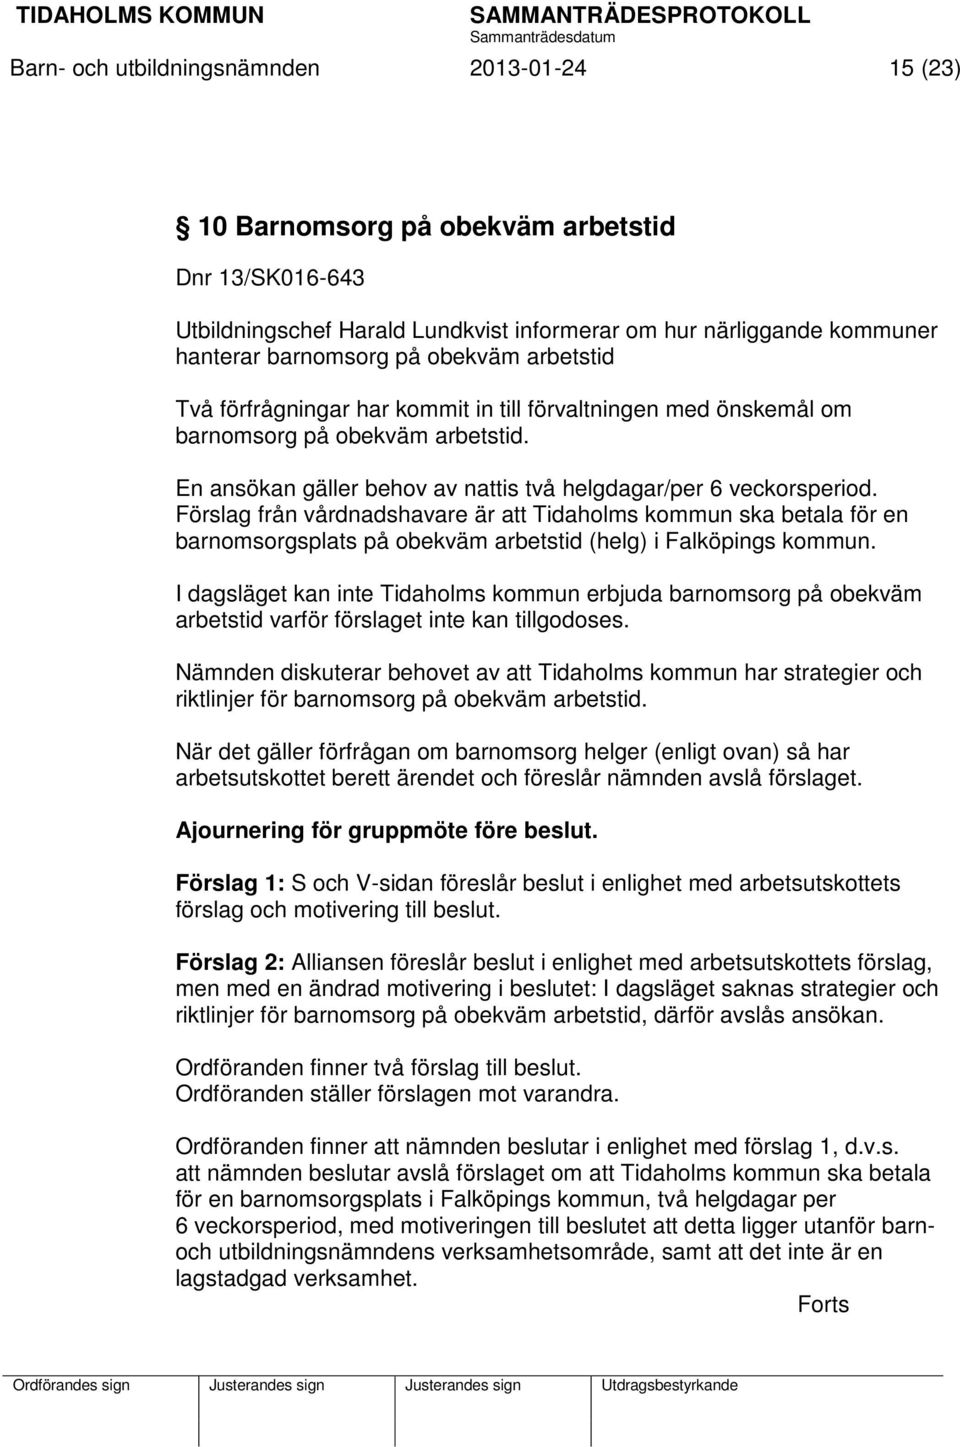 Förslag från vårdnadshavare är att Tidaholms kommun ska betala för en barnomsorgsplats på obekväm arbetstid (helg) i Falköpings kommun.